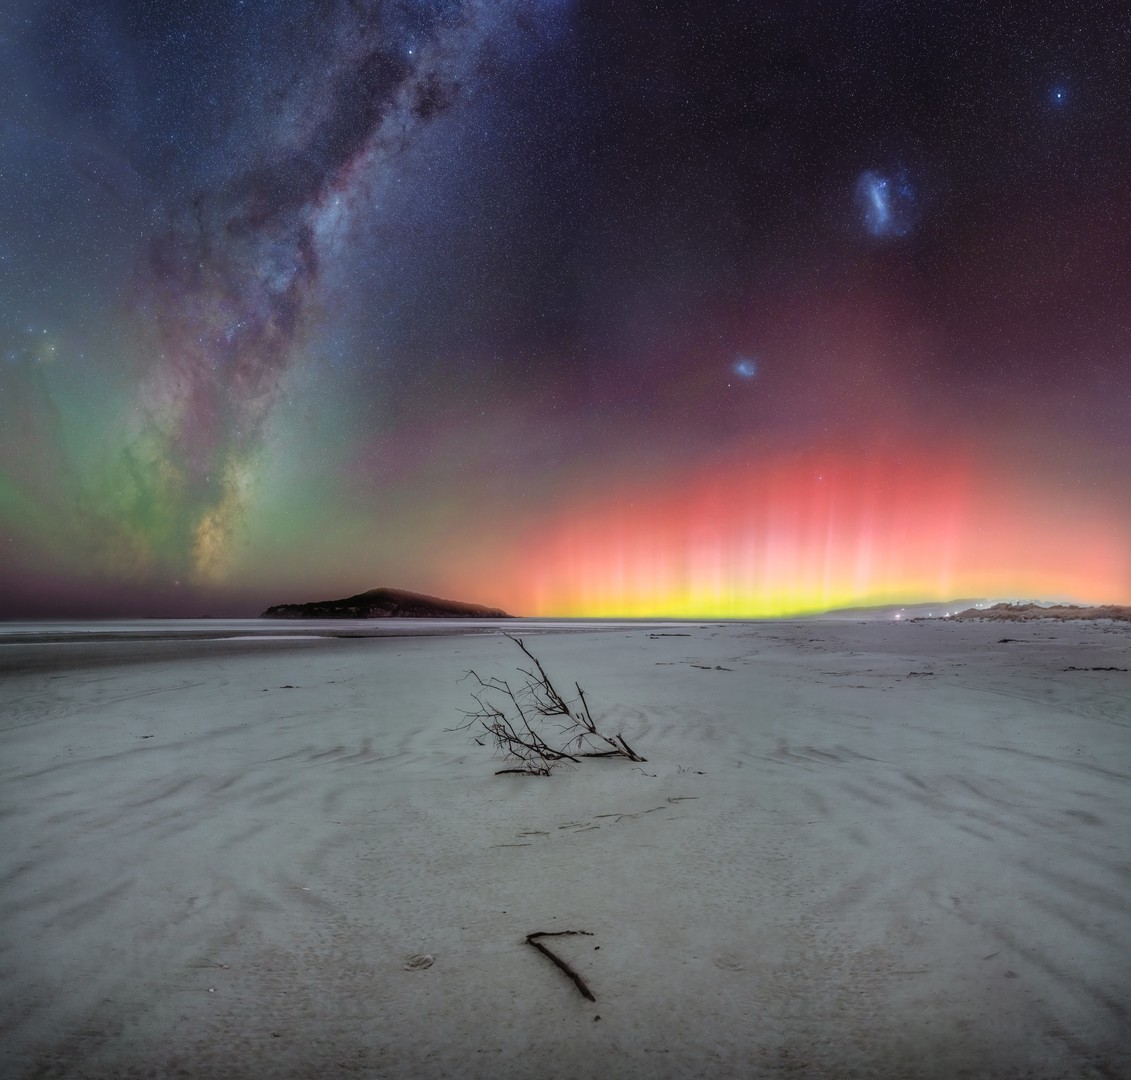 «Εκρήξεις του Ουρανού», Παραλία Ταϊάρι, Οτάγκο, Νέα Ζηλανδία. Η Νέα Ζηλανδία είναι πραγματικά ένα ιδιαίτερο μέρος για αστροφωτογραφίσεις. Οι ουρανοί είναι υπέροχα σκοτεινοί και τα τοπία έχουν πολλά ενδιαφέροντα χαρακτηριστικά